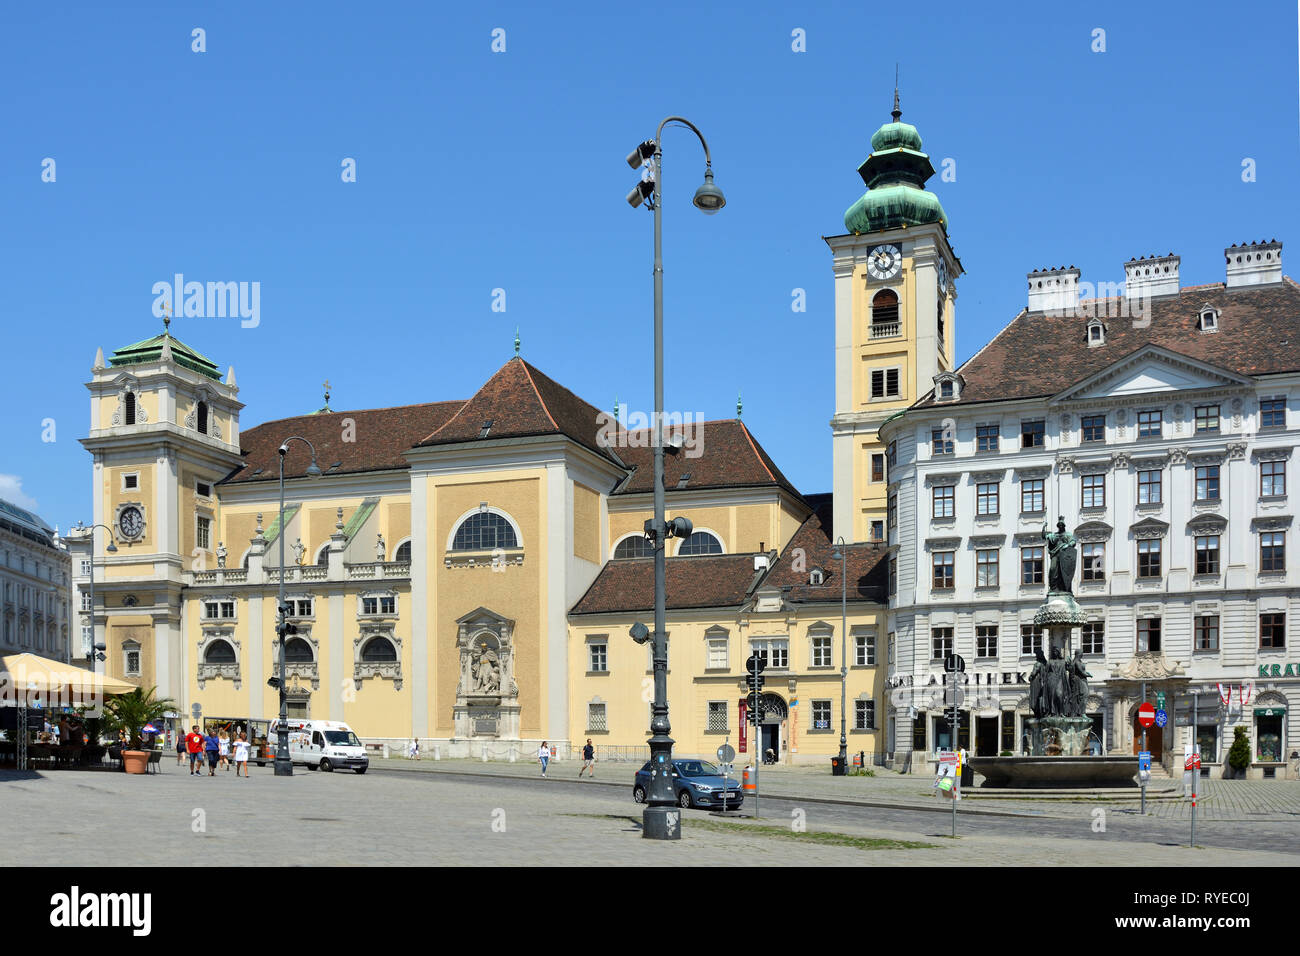 Vienne, Autriche - 17 juin 2018 : l'Église écossaise sur la place Freyung à Vienne - Autriche. Banque D'Images